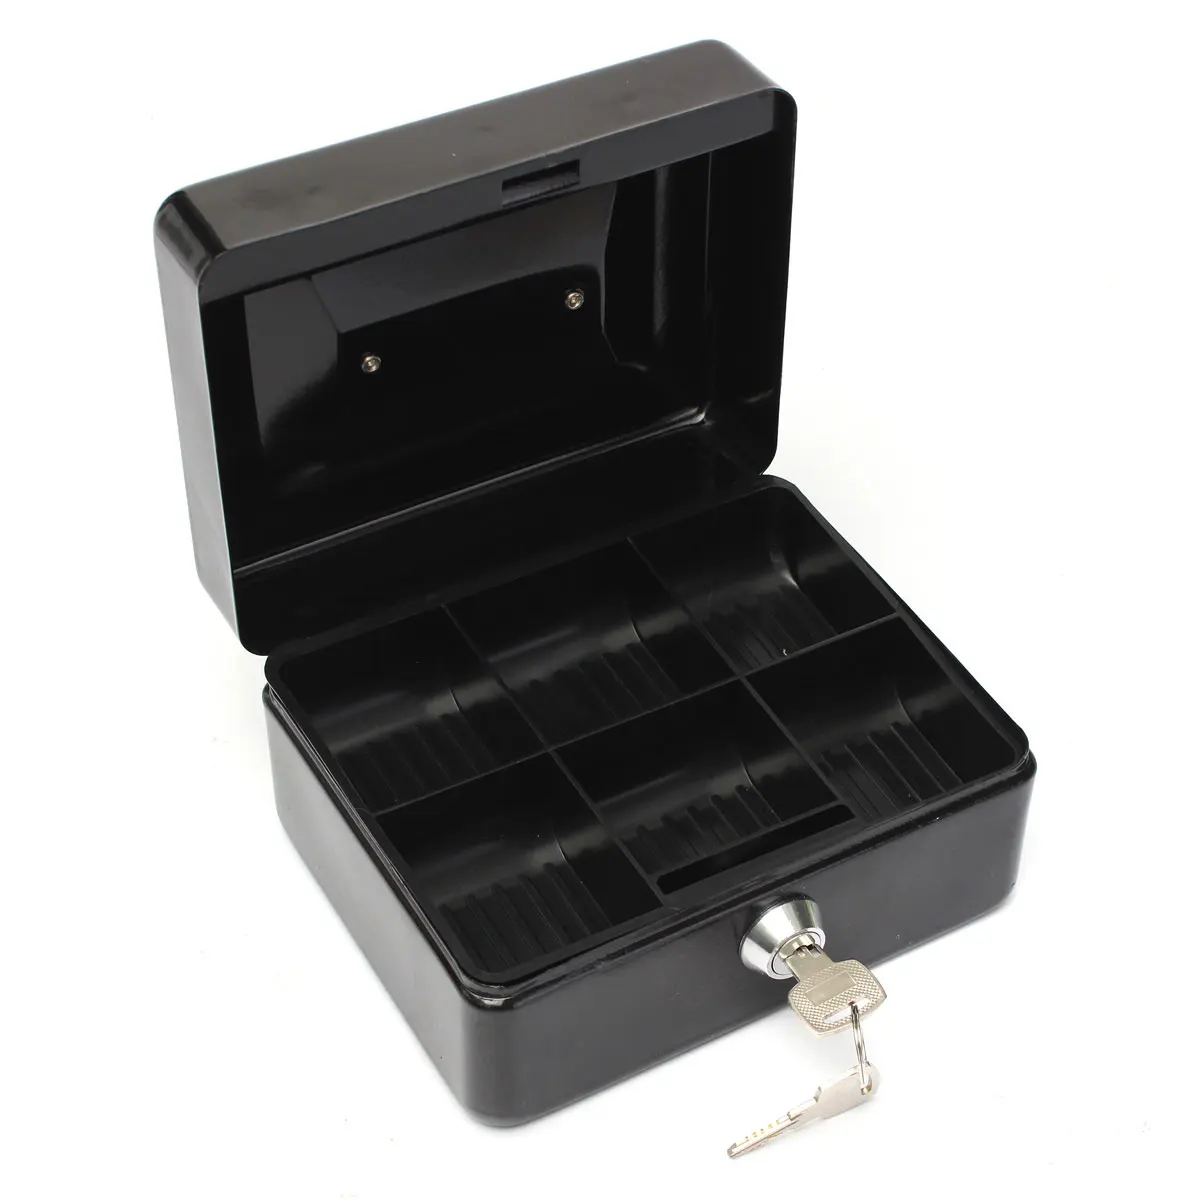 Запираемые наличные монеты хранения денег Сейф безопасности коробка держатель чемодан с замком ключ 6 отсек лоток - Цвет: Black